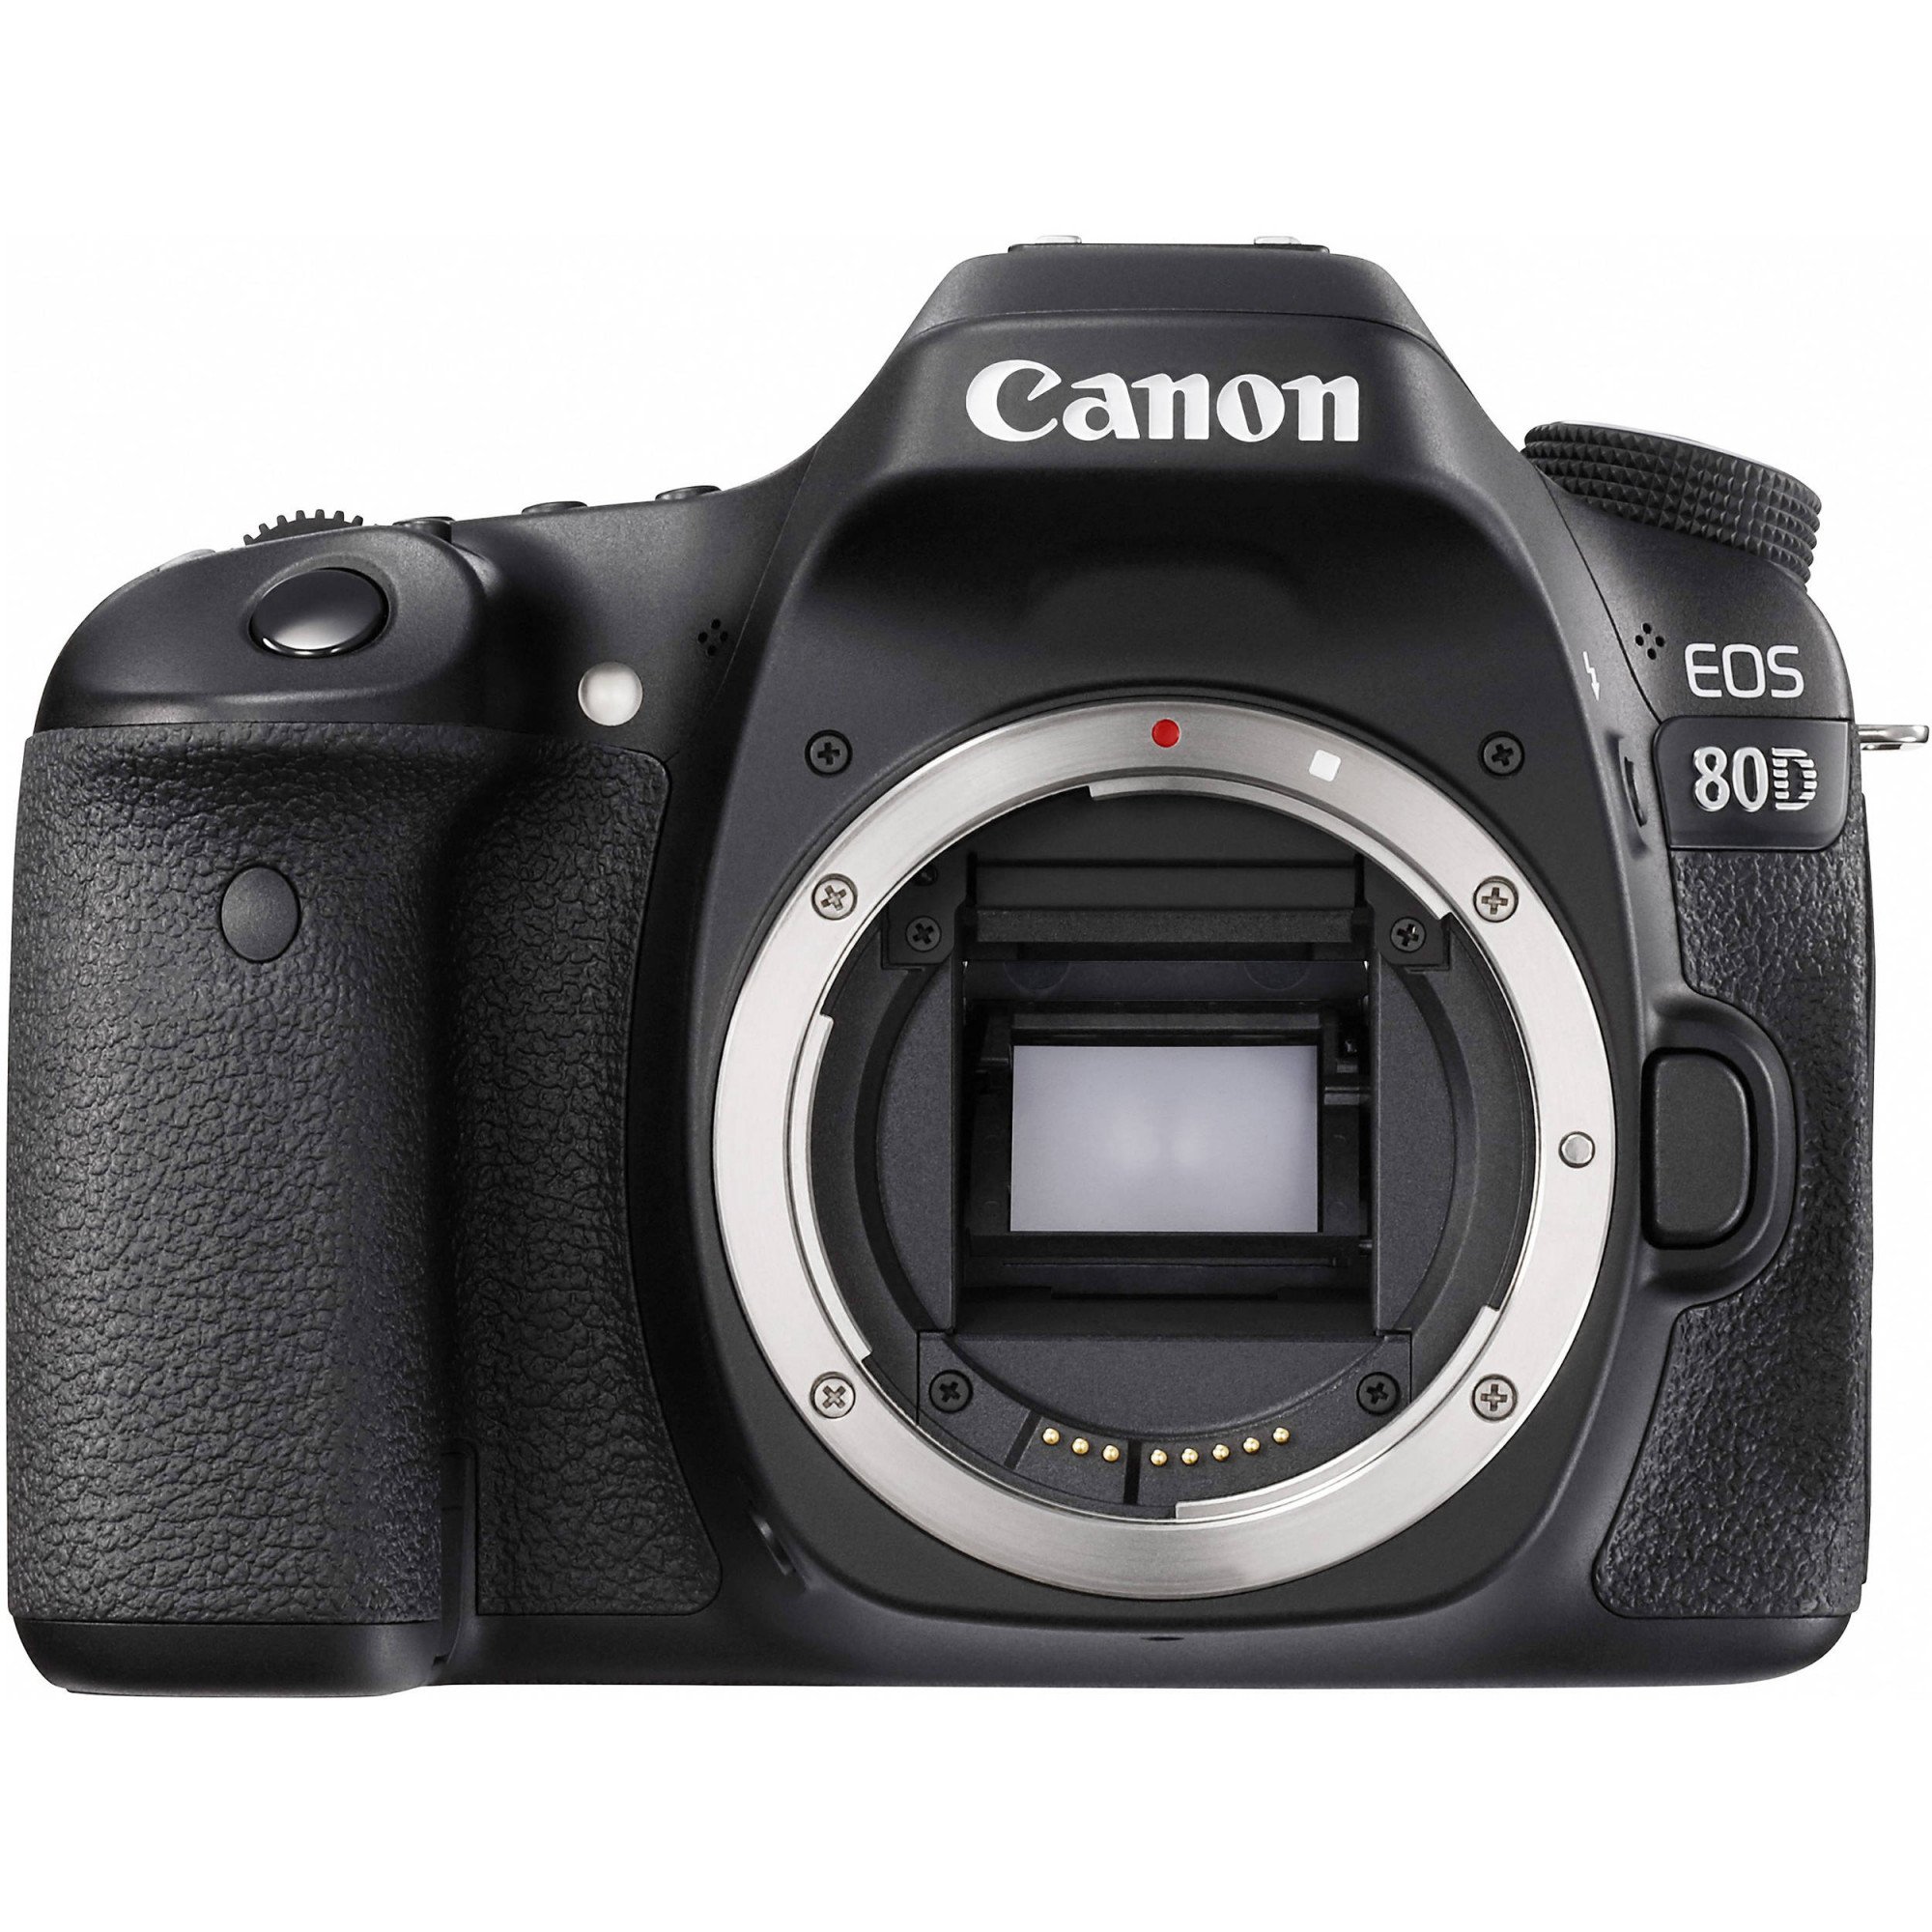 Máy ảnh Canon EOS 80D: Chiếc máy ảnh này có gì đặc biệt để bạn khám phá? Canon EOS 80D là một trong những sản phẩm chụp ảnh chuyên nghiệp tốt nhất trên thị trường hiện nay. Với nhiều tính năng và phụ kiện tiện ích, máy ảnh này sẽ giúp bạn tạo ra những bức ảnh đẹp và nổi bật. Đừng bỏ lỡ cơ hội để khám phá thế giới của chụp ảnh với máy ảnh Canon EOS 80D.